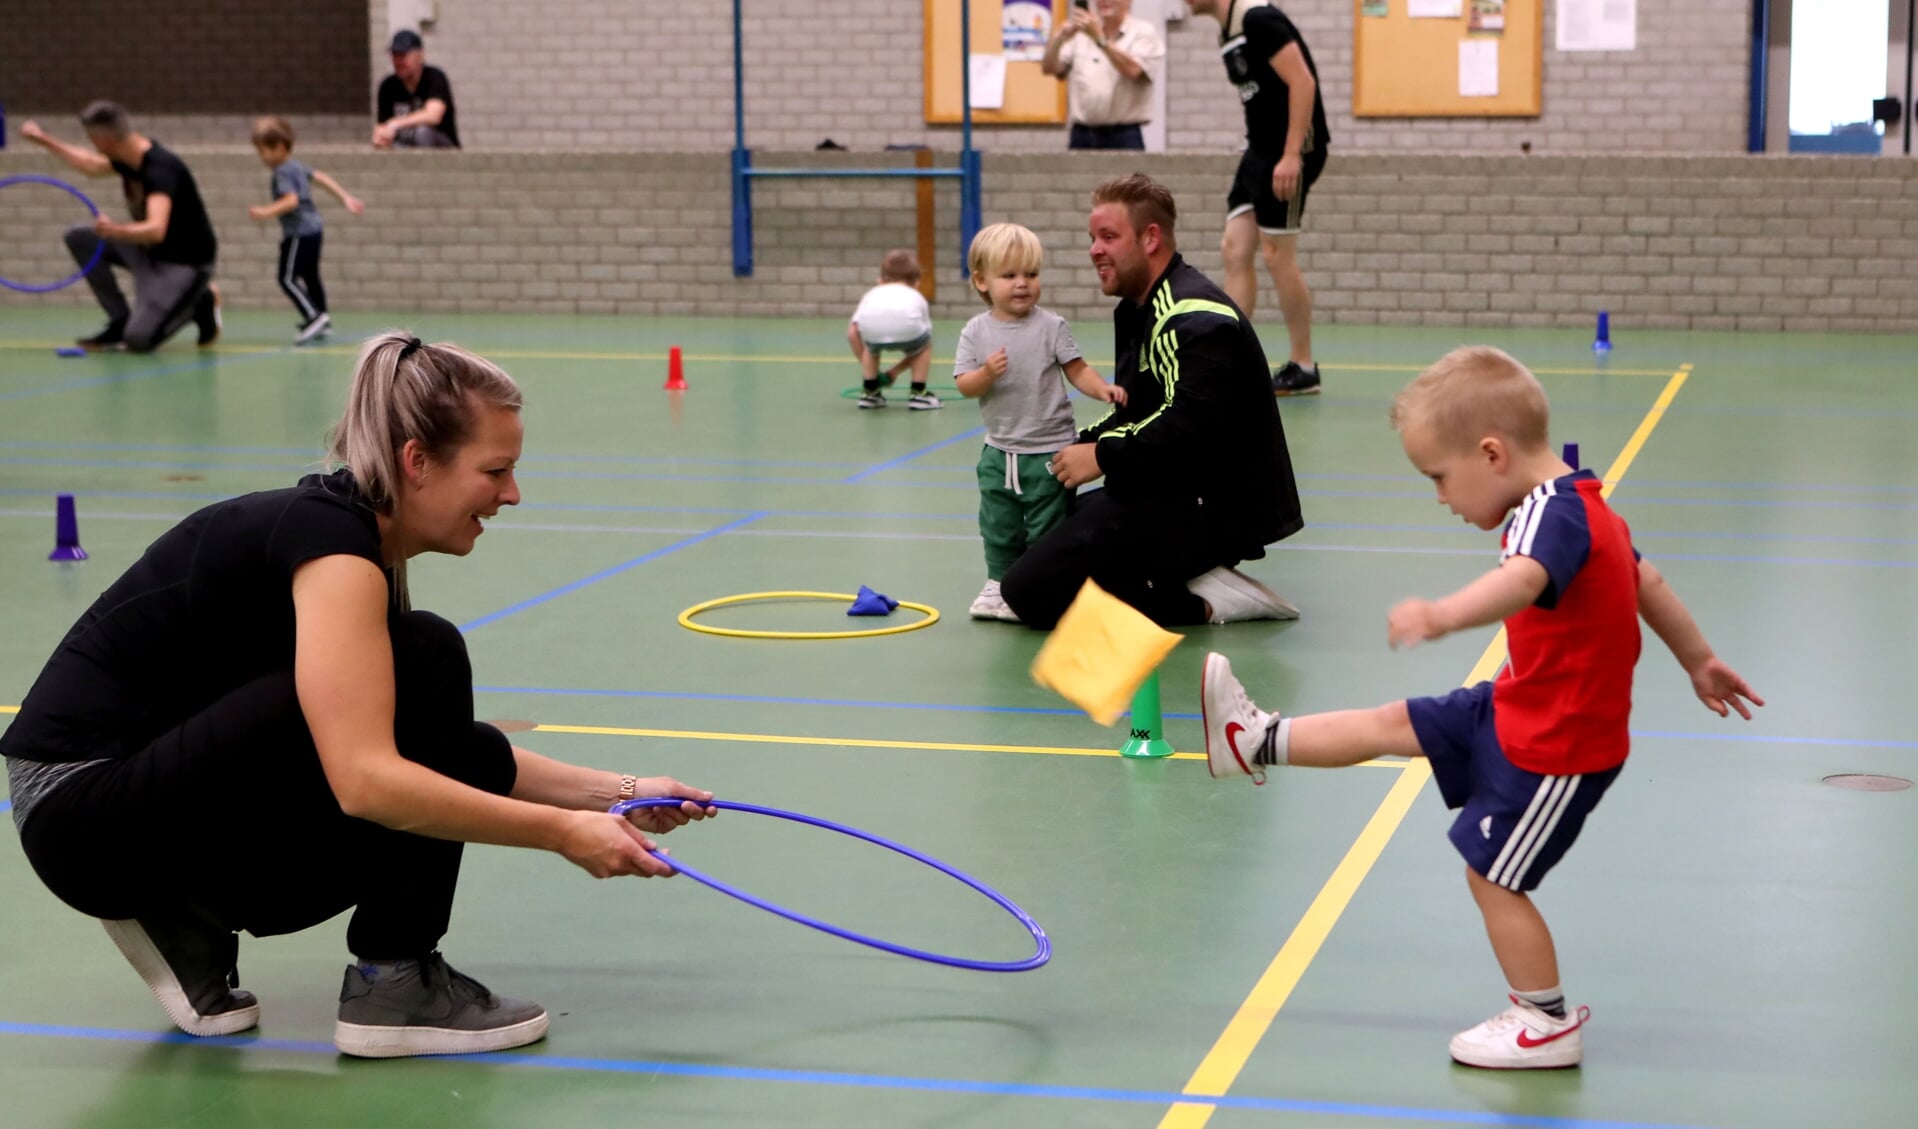 Voetjebal zorgt voor veel plezier bij de kinderen, maar ook bij de volwassene. (Foto: Hans van der Poel)